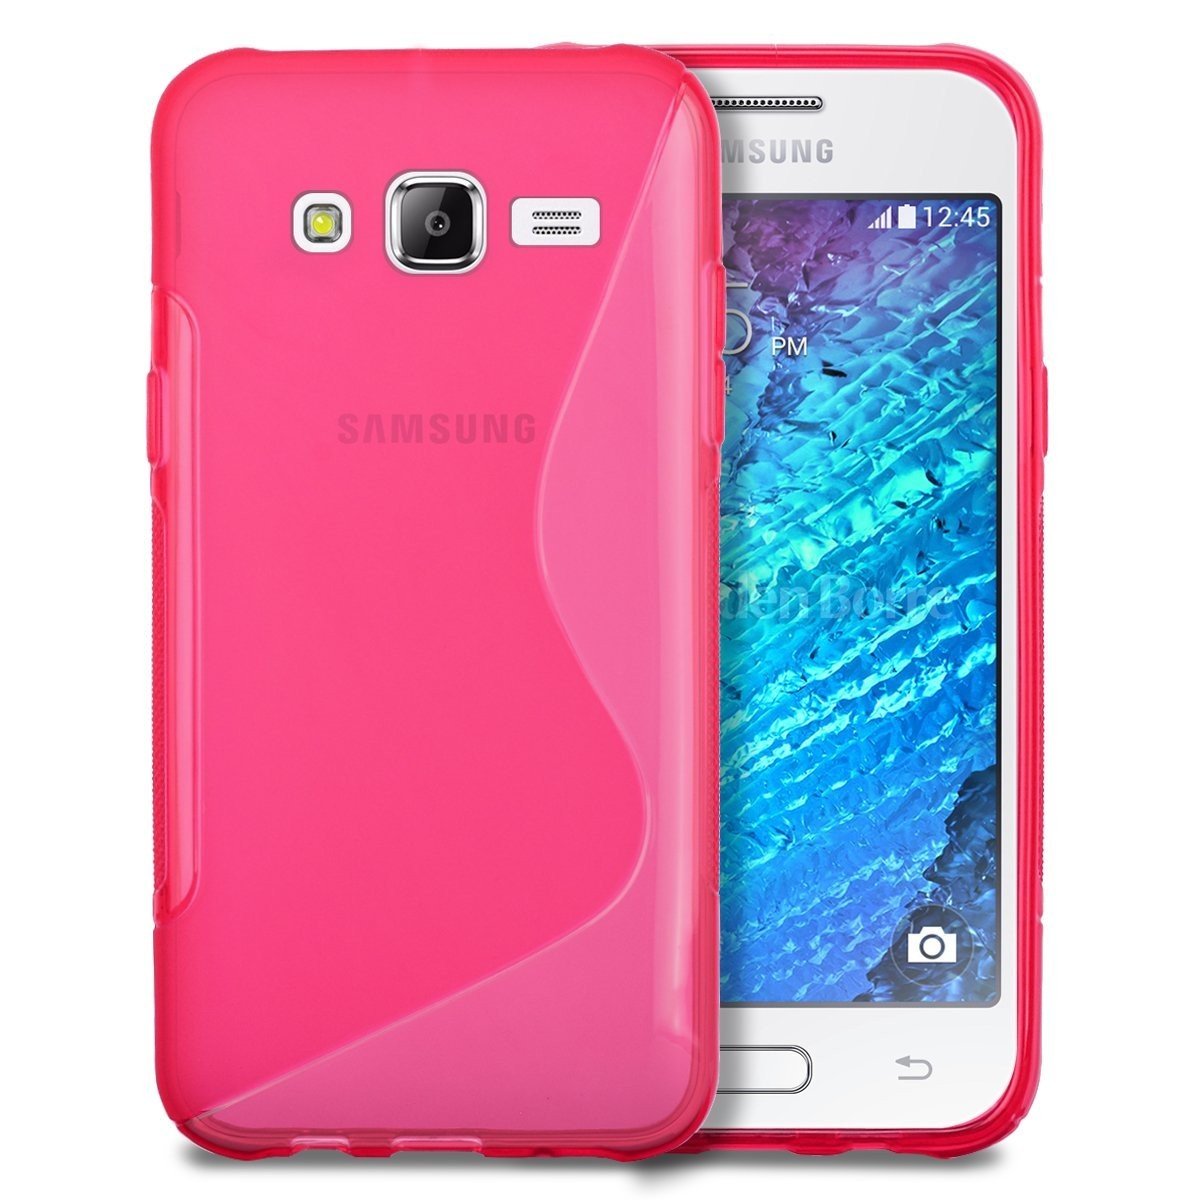 Hoesje Samsung Galaxy J5 TPU case roze